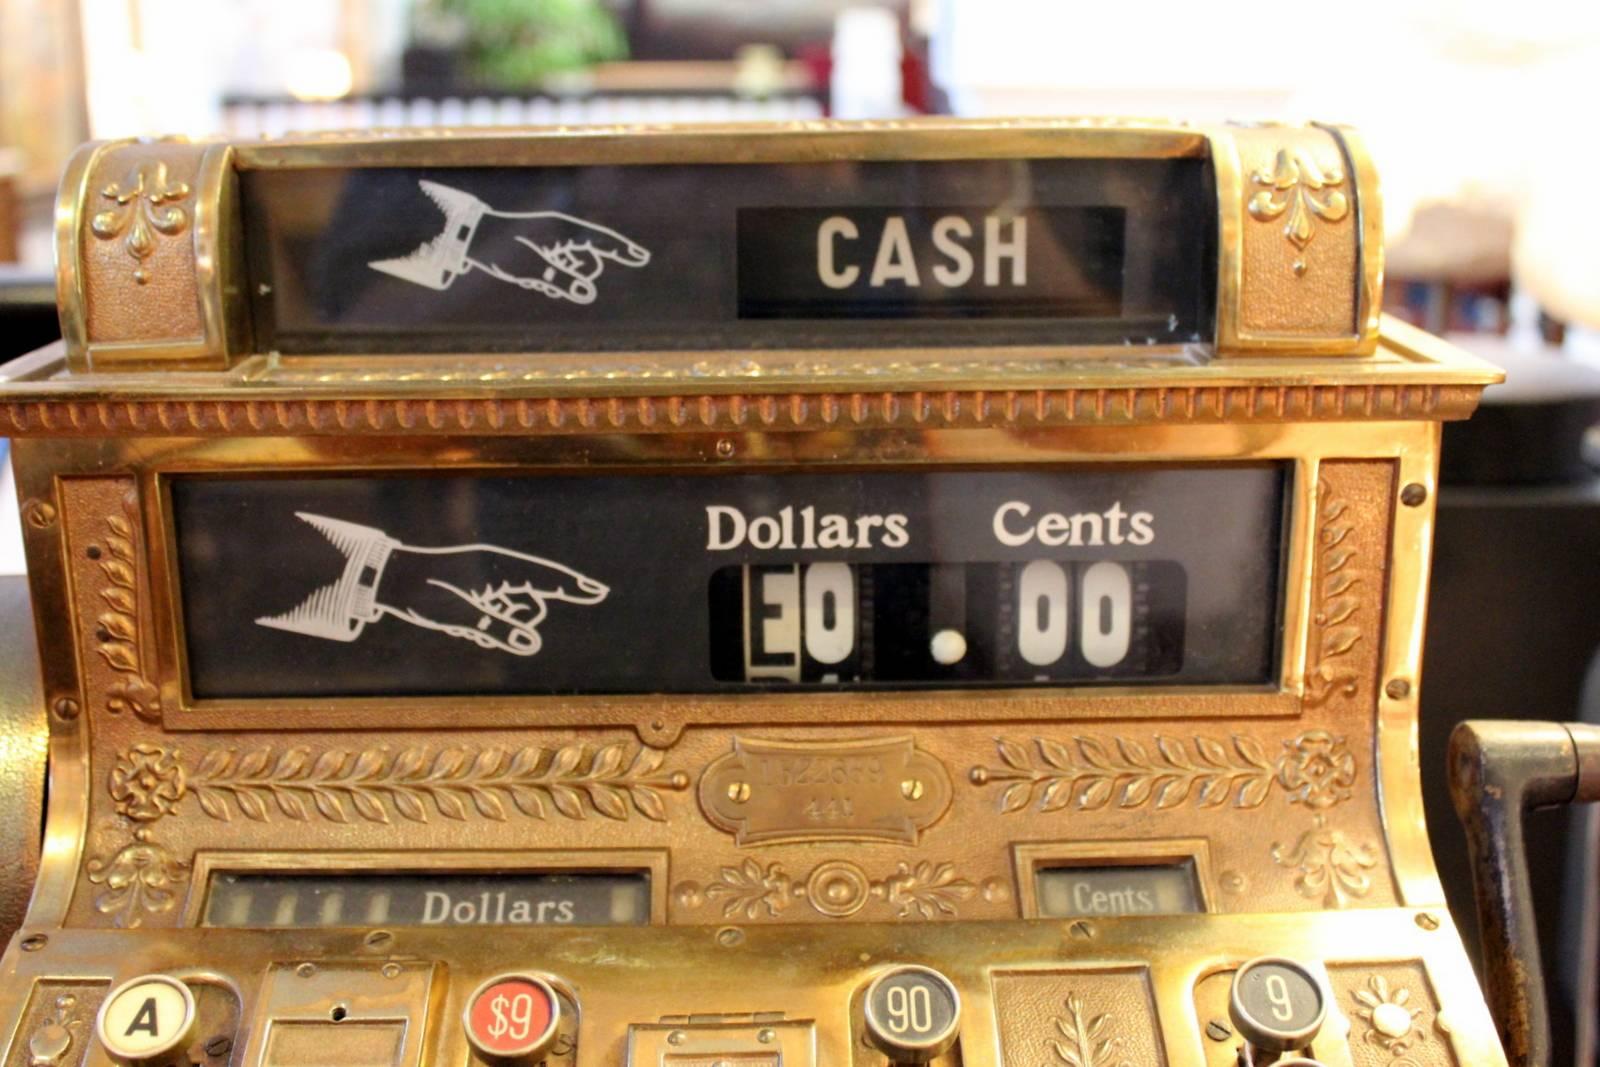 antique national cash register